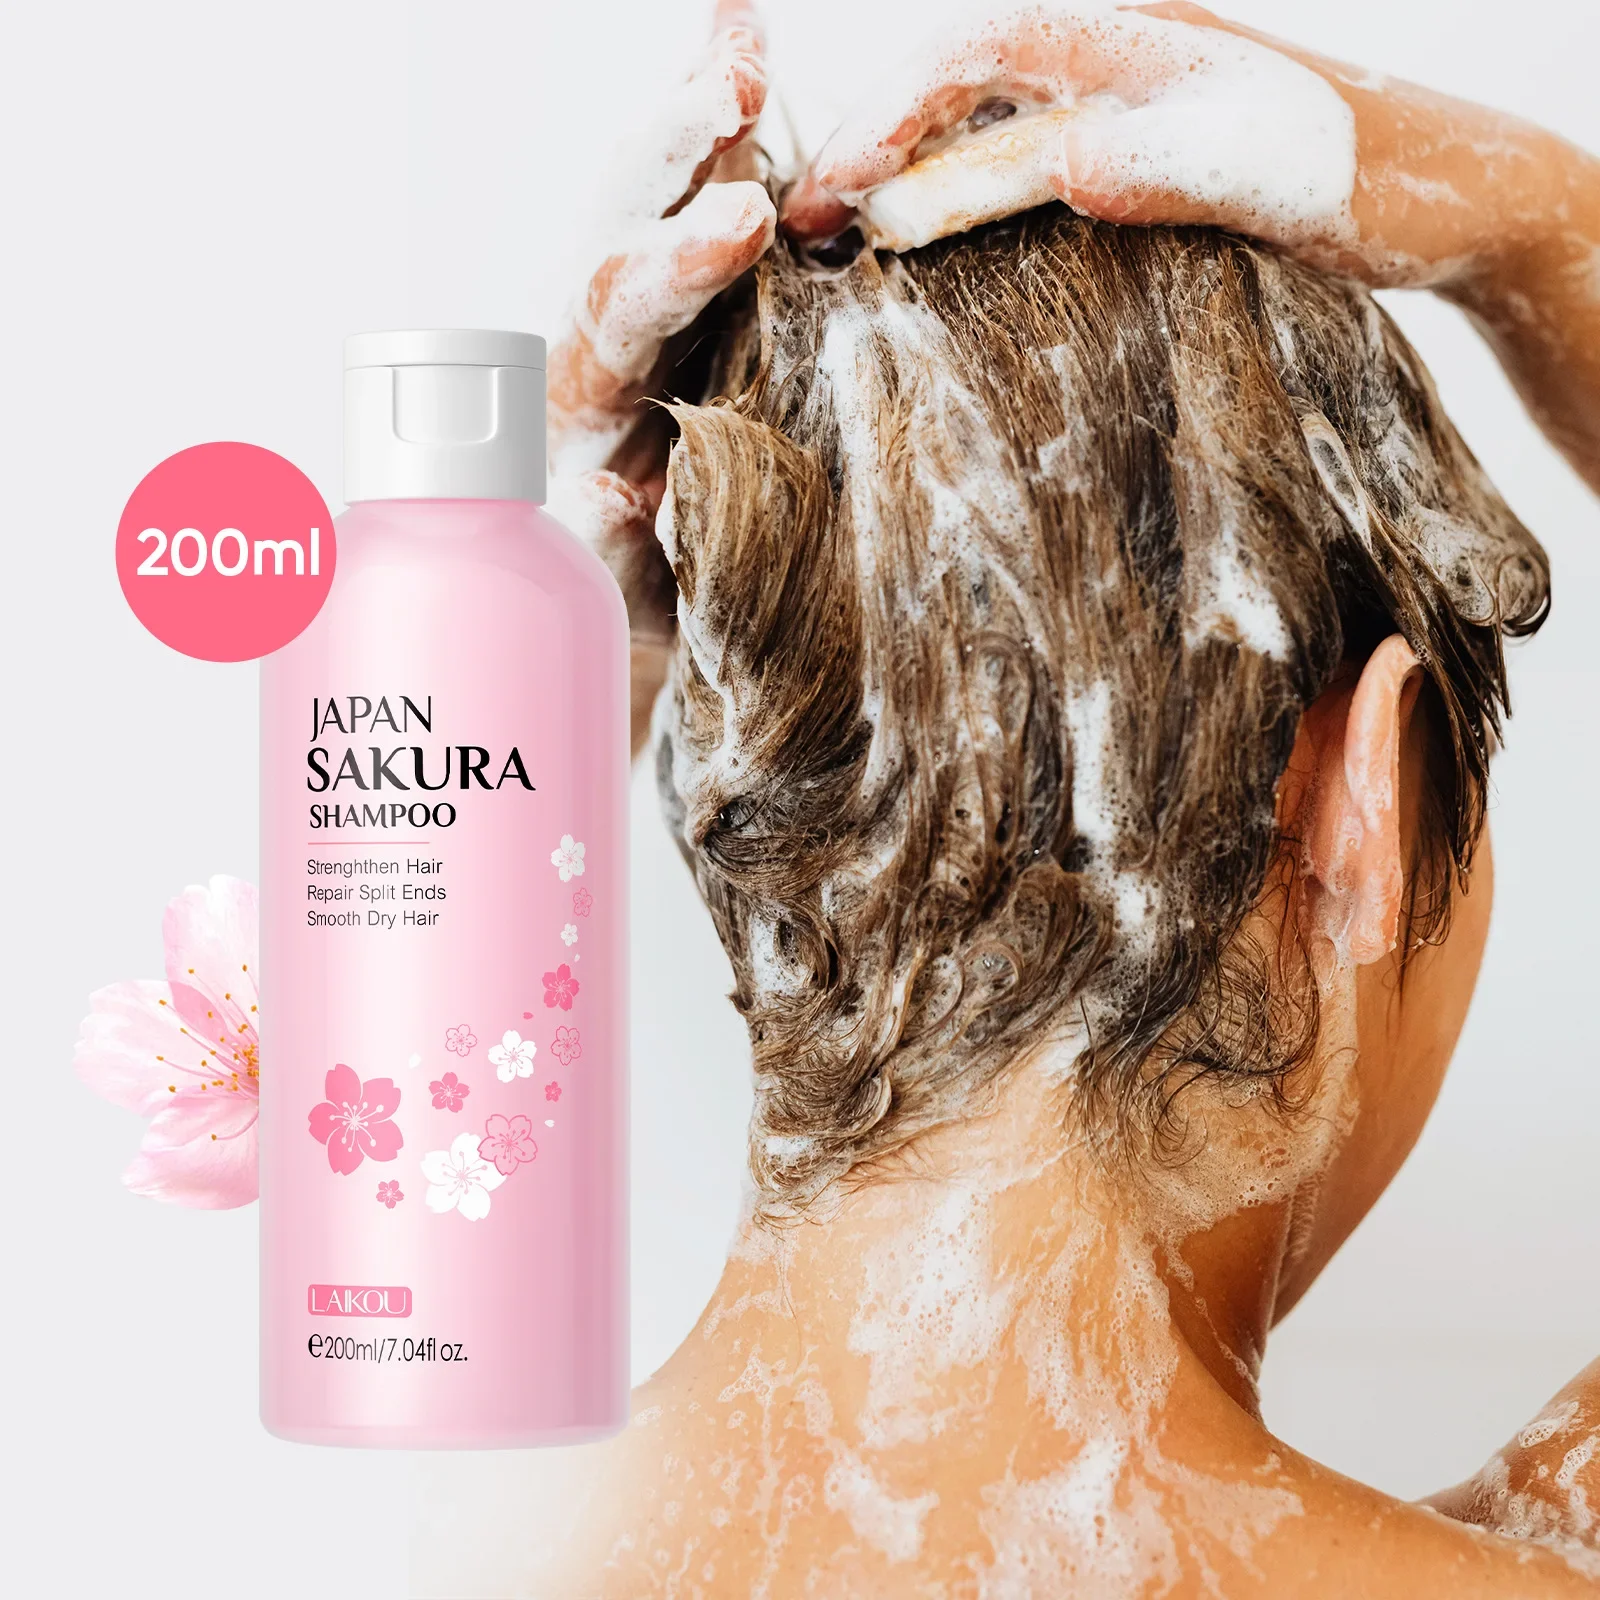 

Шампунь LAIKOU Sakura, Кондиционер для волос, восстанавливающий, увлажняющий, питательный, против перхоти, шампунь для жирной кожи, очищающий уход